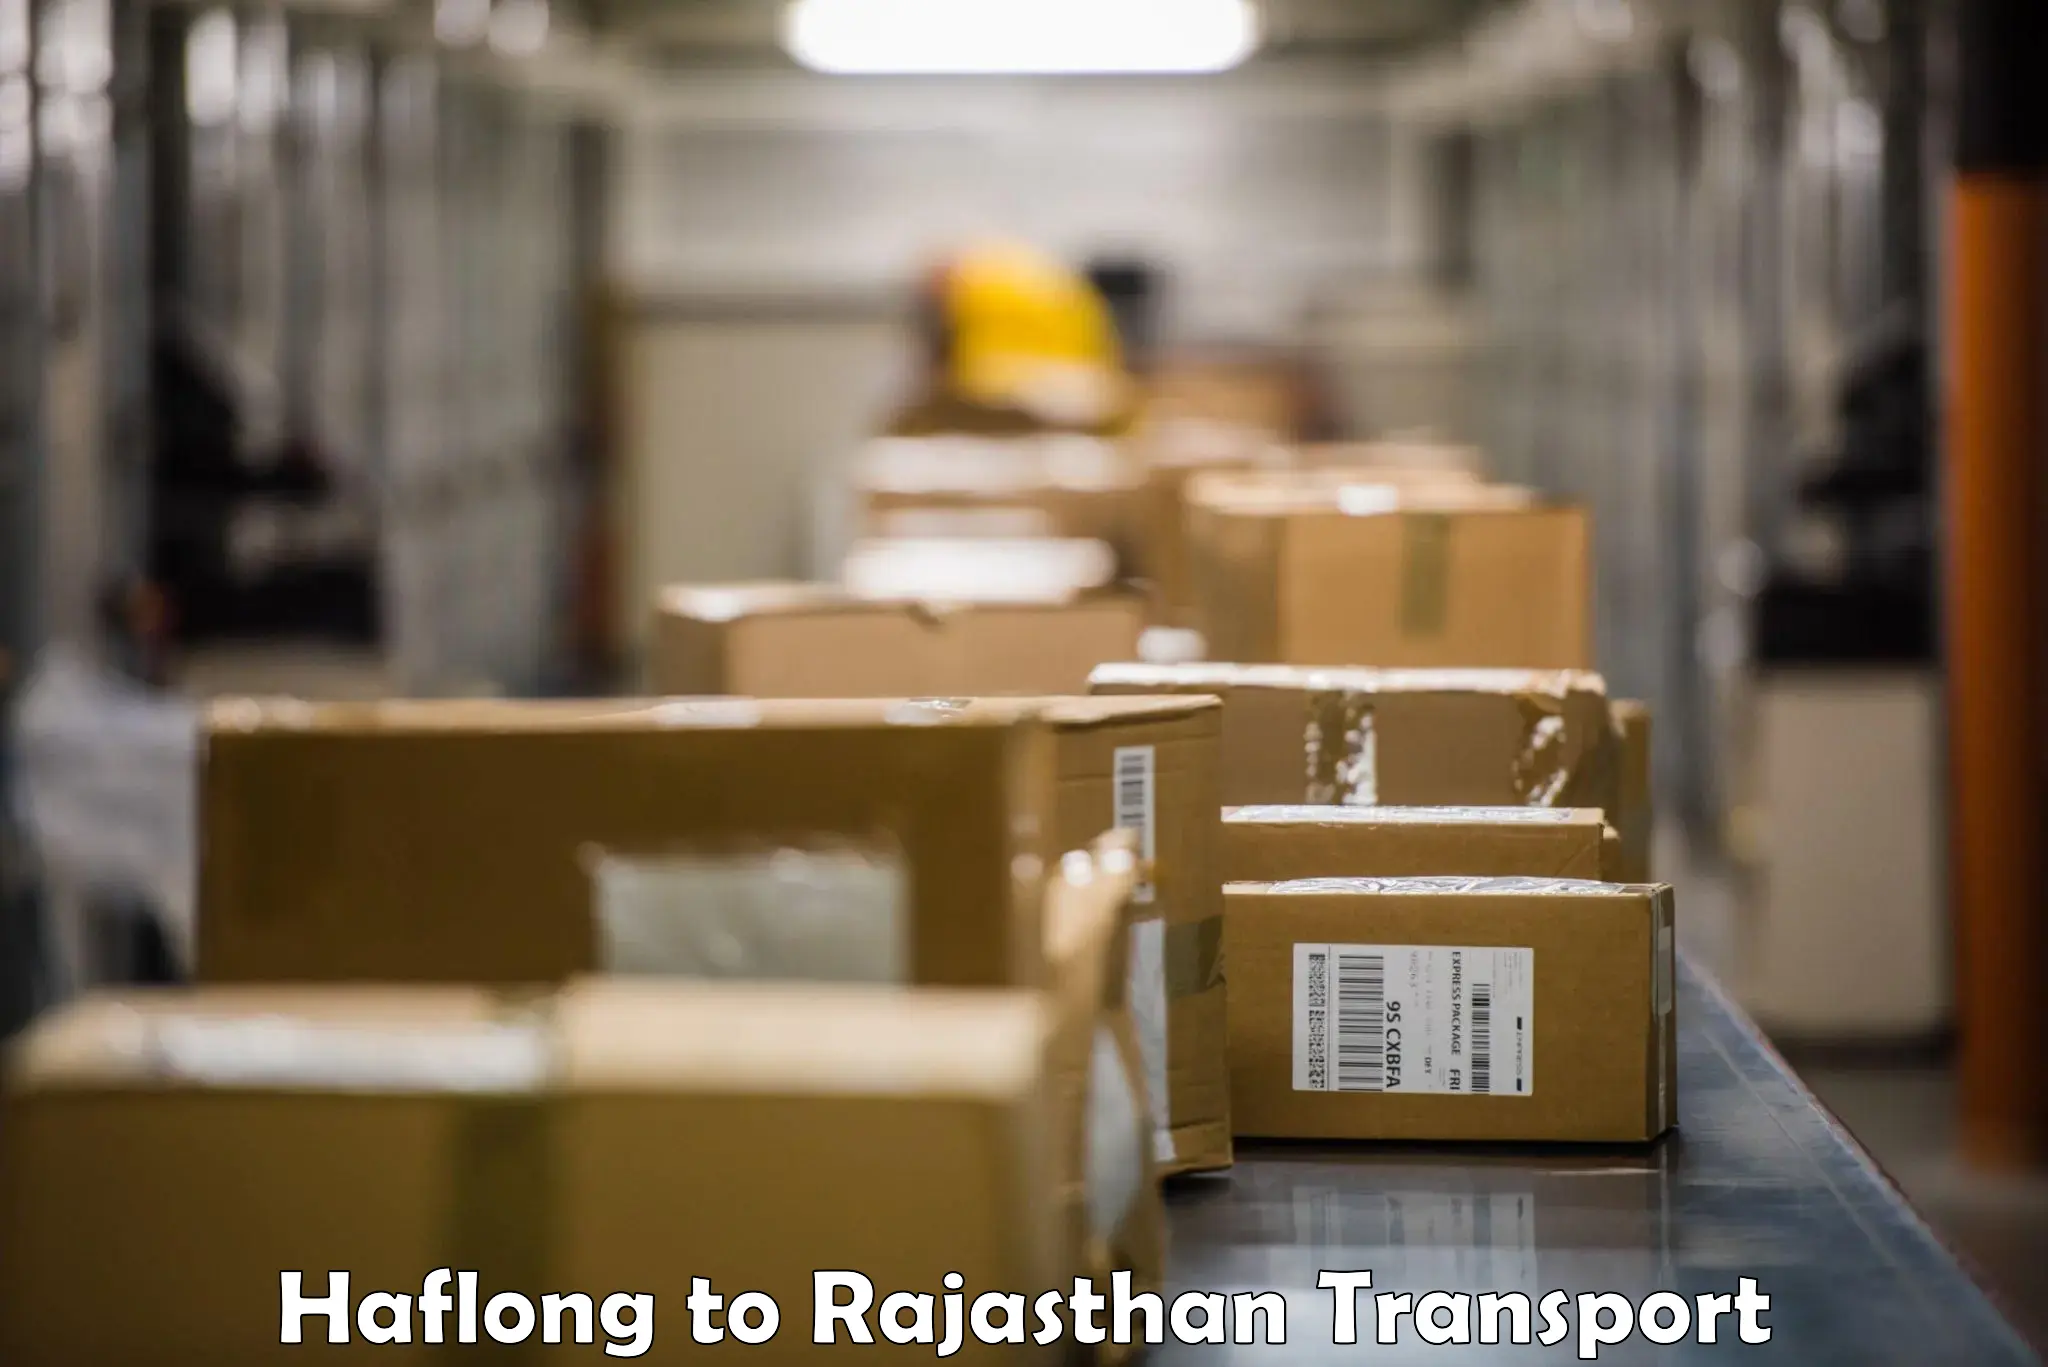 Bike transport service Haflong to Rajgarh Rajasthan